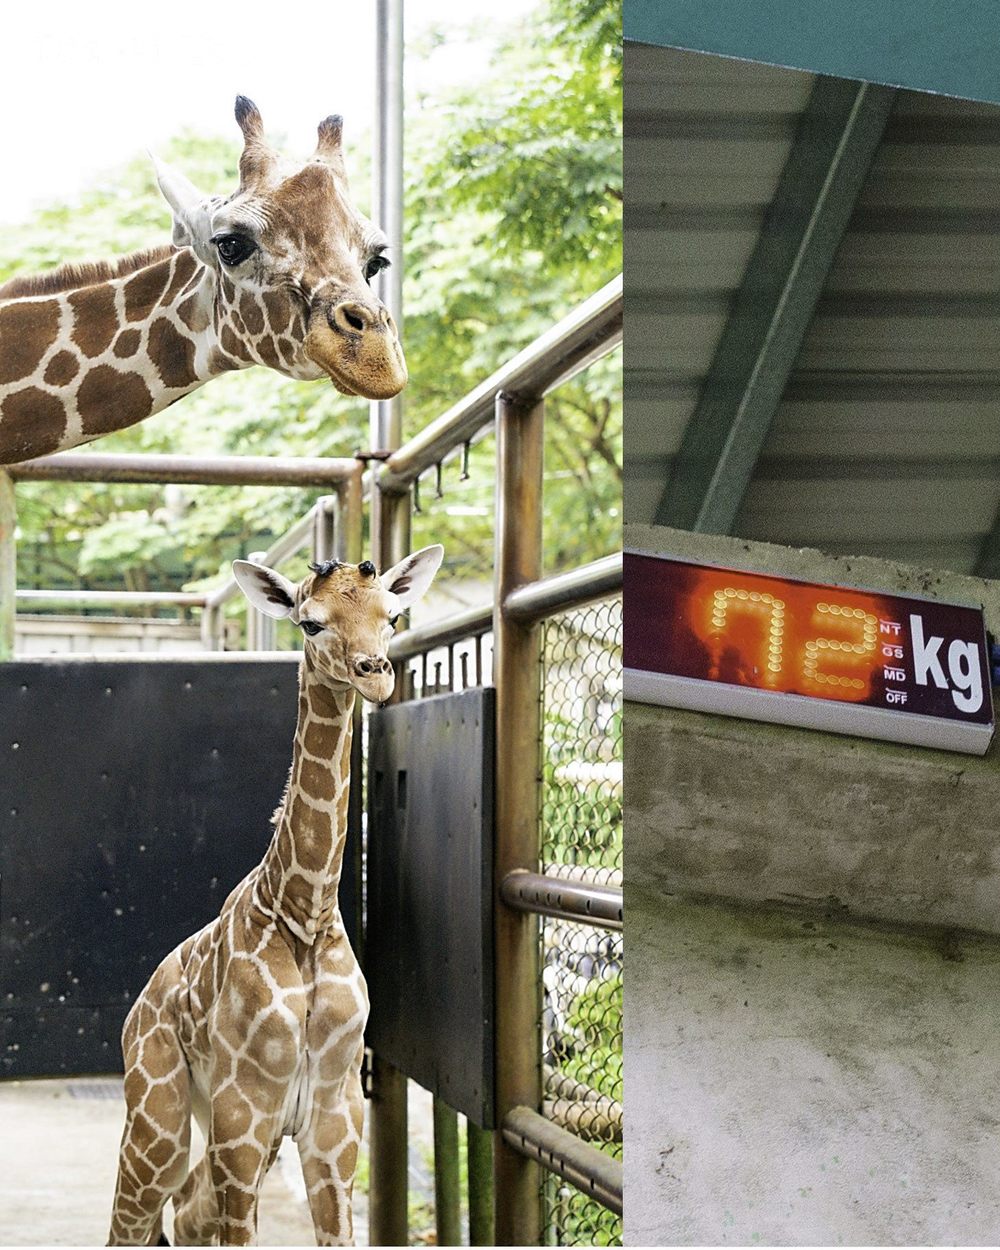 小麥：寶寶你的體重是多少？寶寶：72公斤  / 圖文來源 台北市立動物園